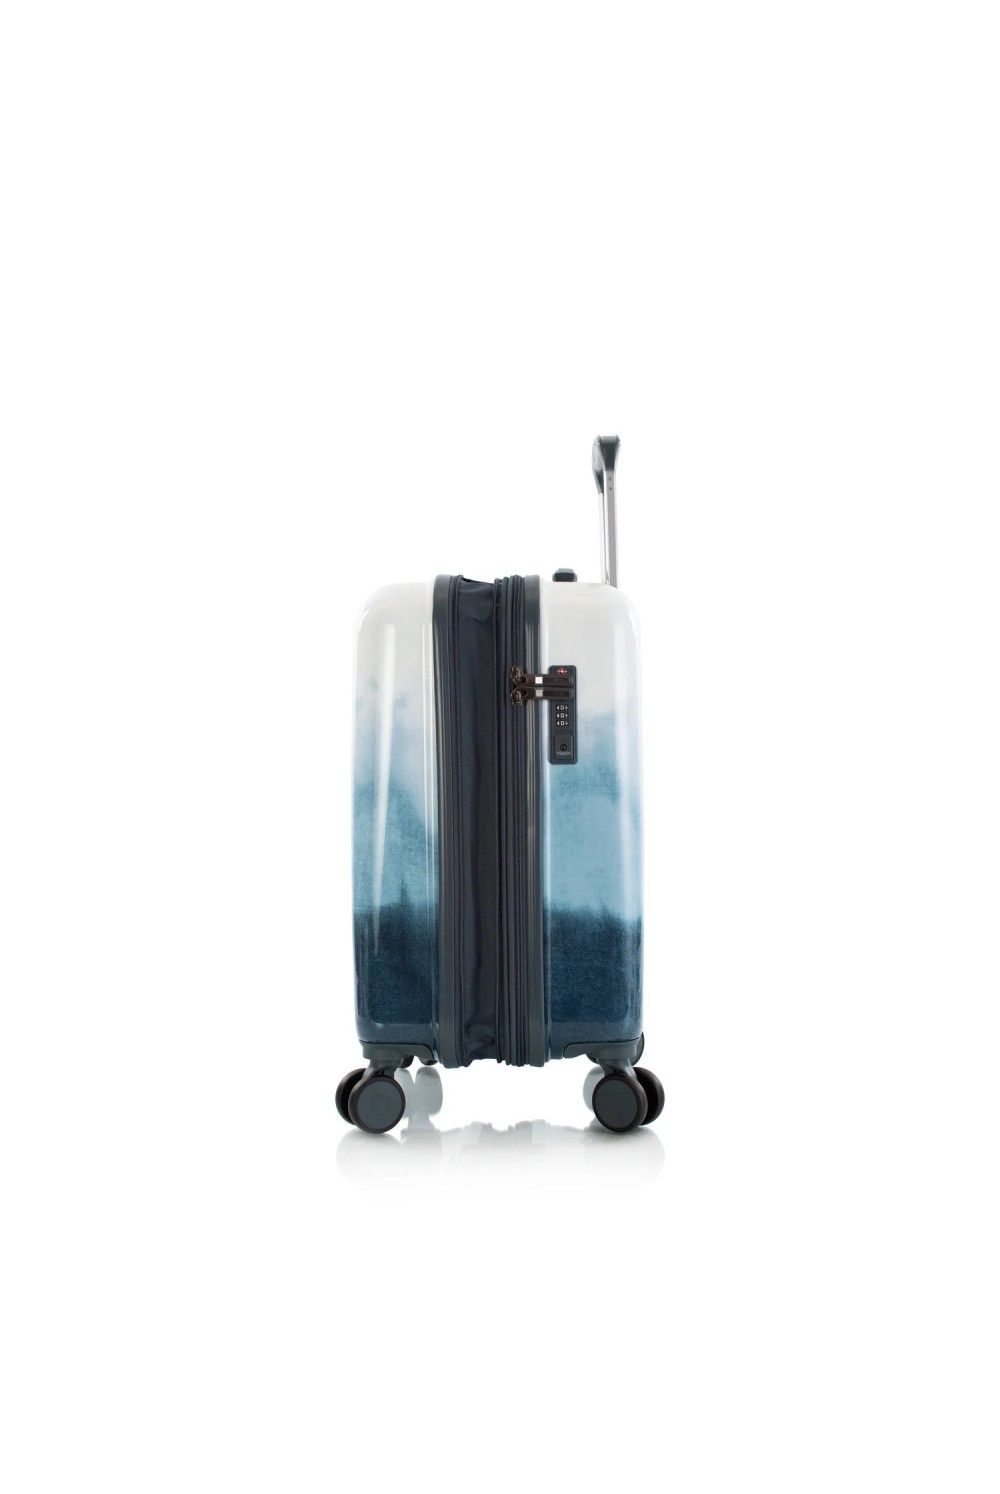 Koffer Handgepäck Heys Blue Fashion 4 Rad 55cm erweiterbar